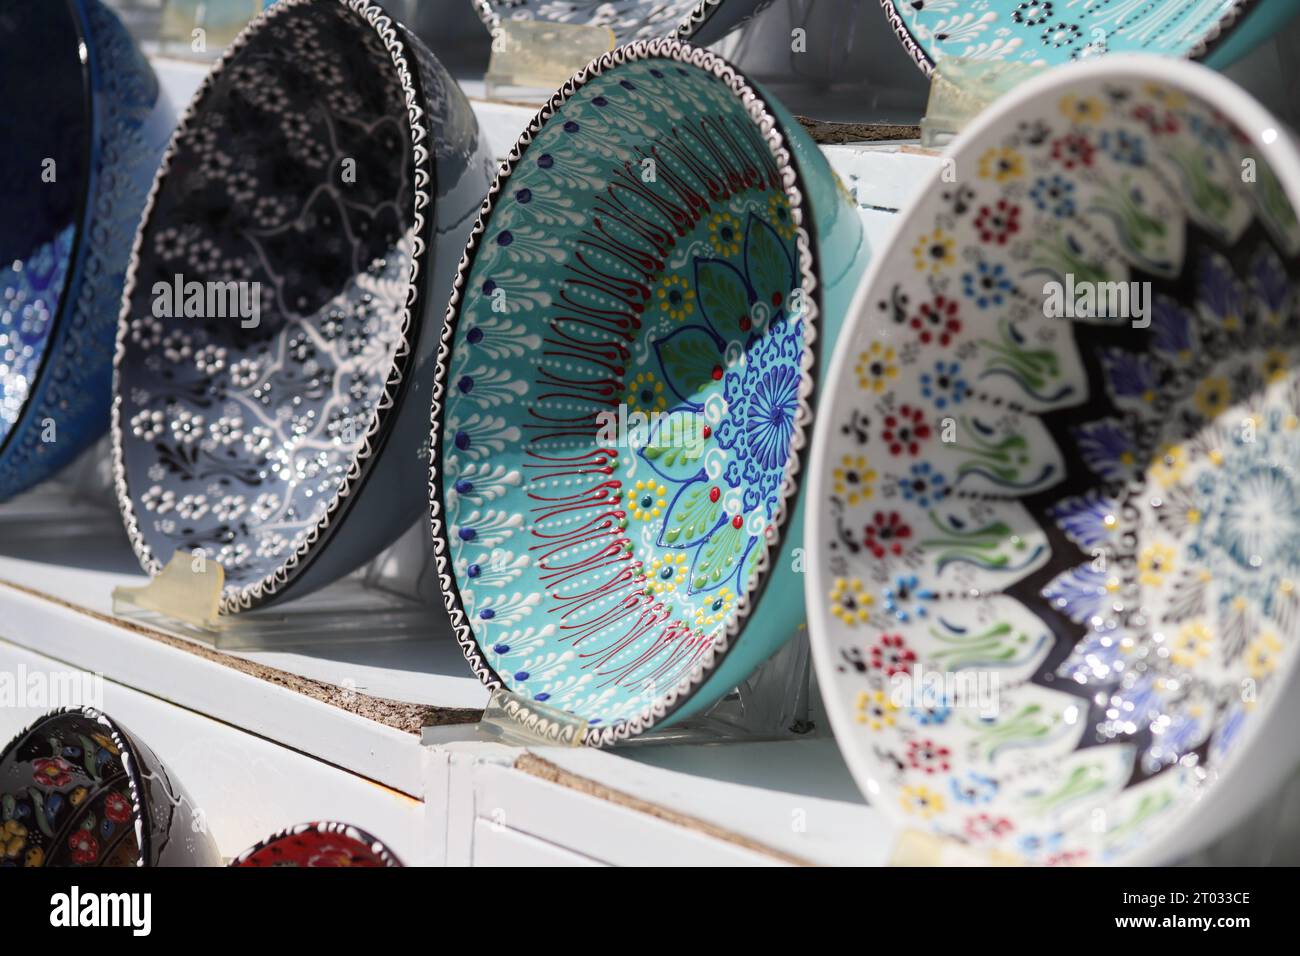 Reihen von wunderschönen, mehrfarbigen dekorativen Schalen mit verschiedenen Designs von sich wiederholenden und floralen Mustern, die auf weißen Regalen von der Seite aus gesehen ausgestellt sind Stockfoto